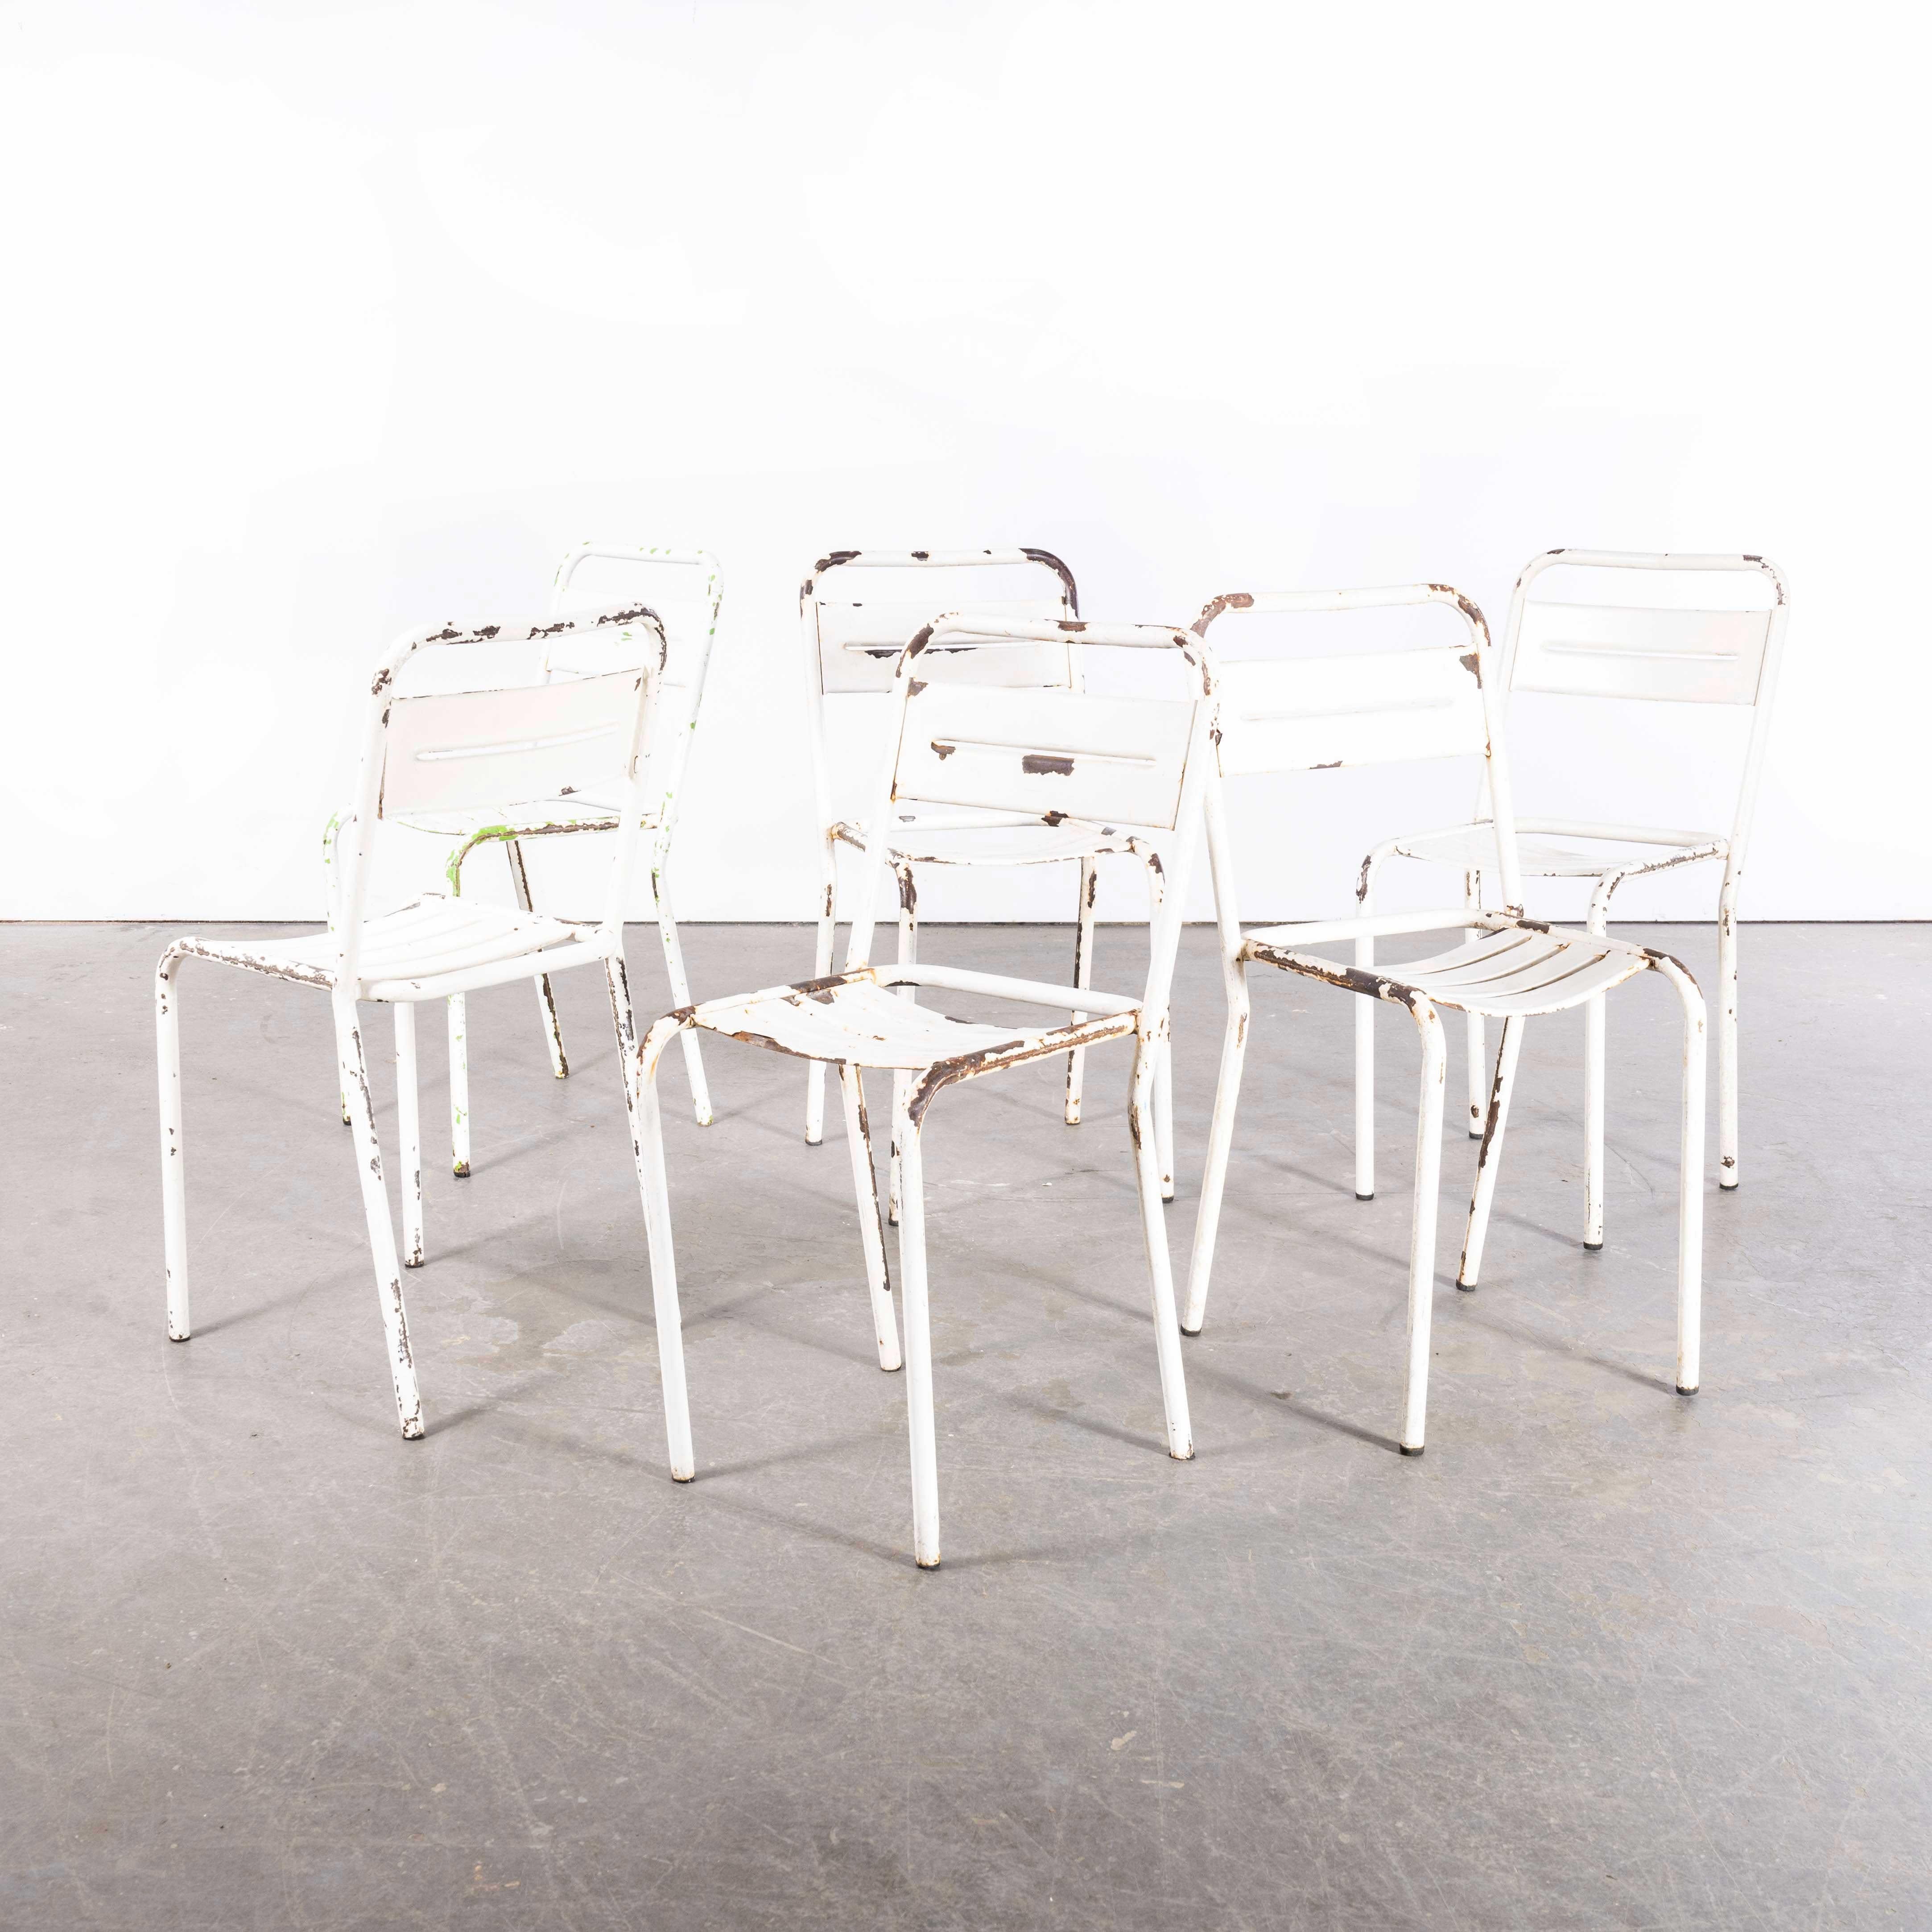 1950er Jahre Französisch  Weiße Metall-Stapelstühle für den Außenbereich - Sechser-Set

1950er Jahre Französisch  Weiße Metall-Stapelstühle für den Außenbereich - Sechser-Set. Dieser Stuhl, der an Tolix erinnert, aber nicht von Tolix hergestellt